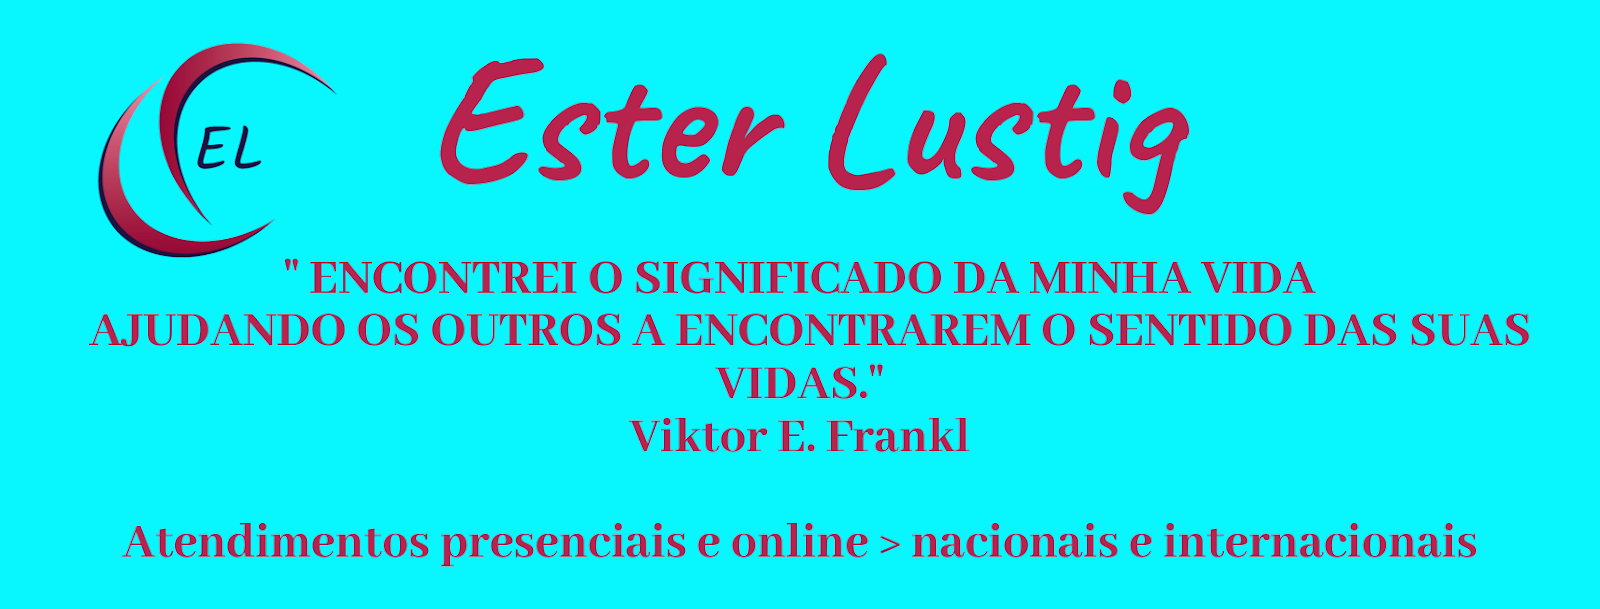 Ester Lustig